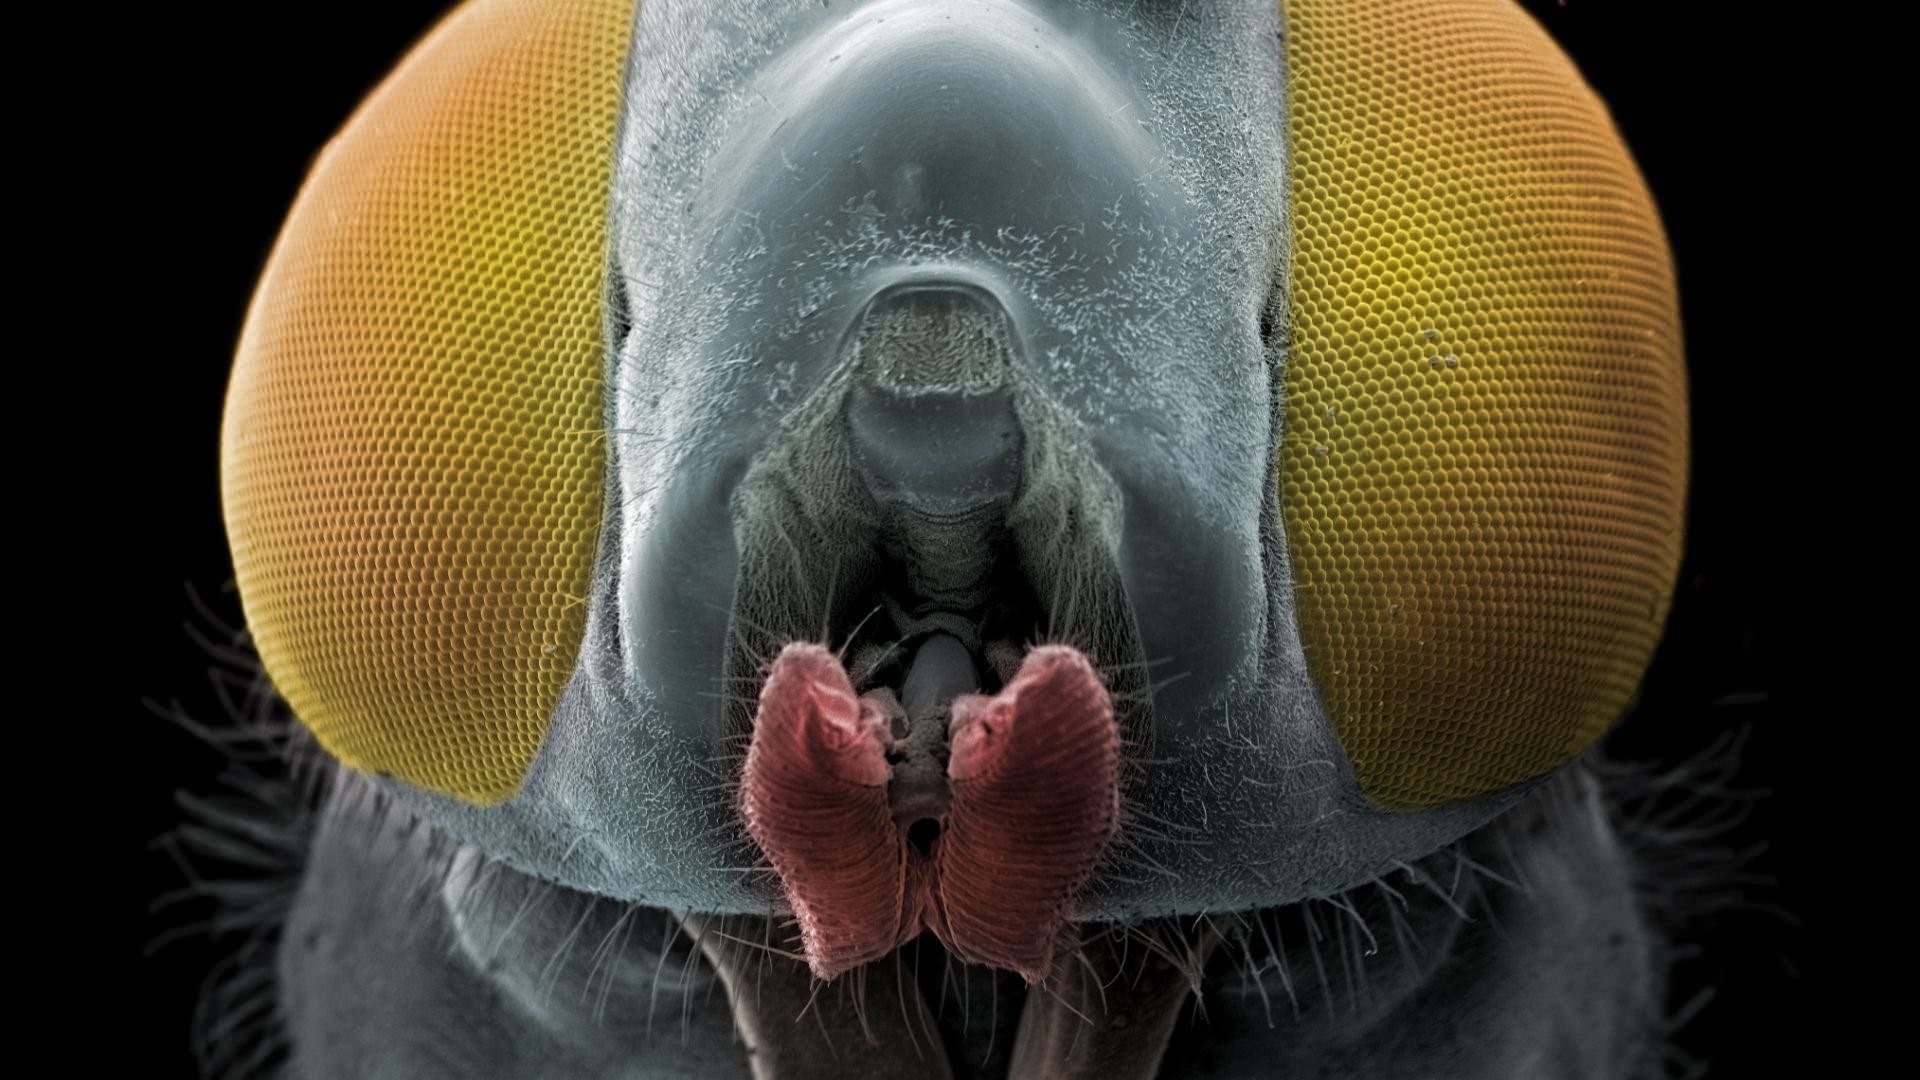 Фото мошки под микроскопом челюсти смотреть